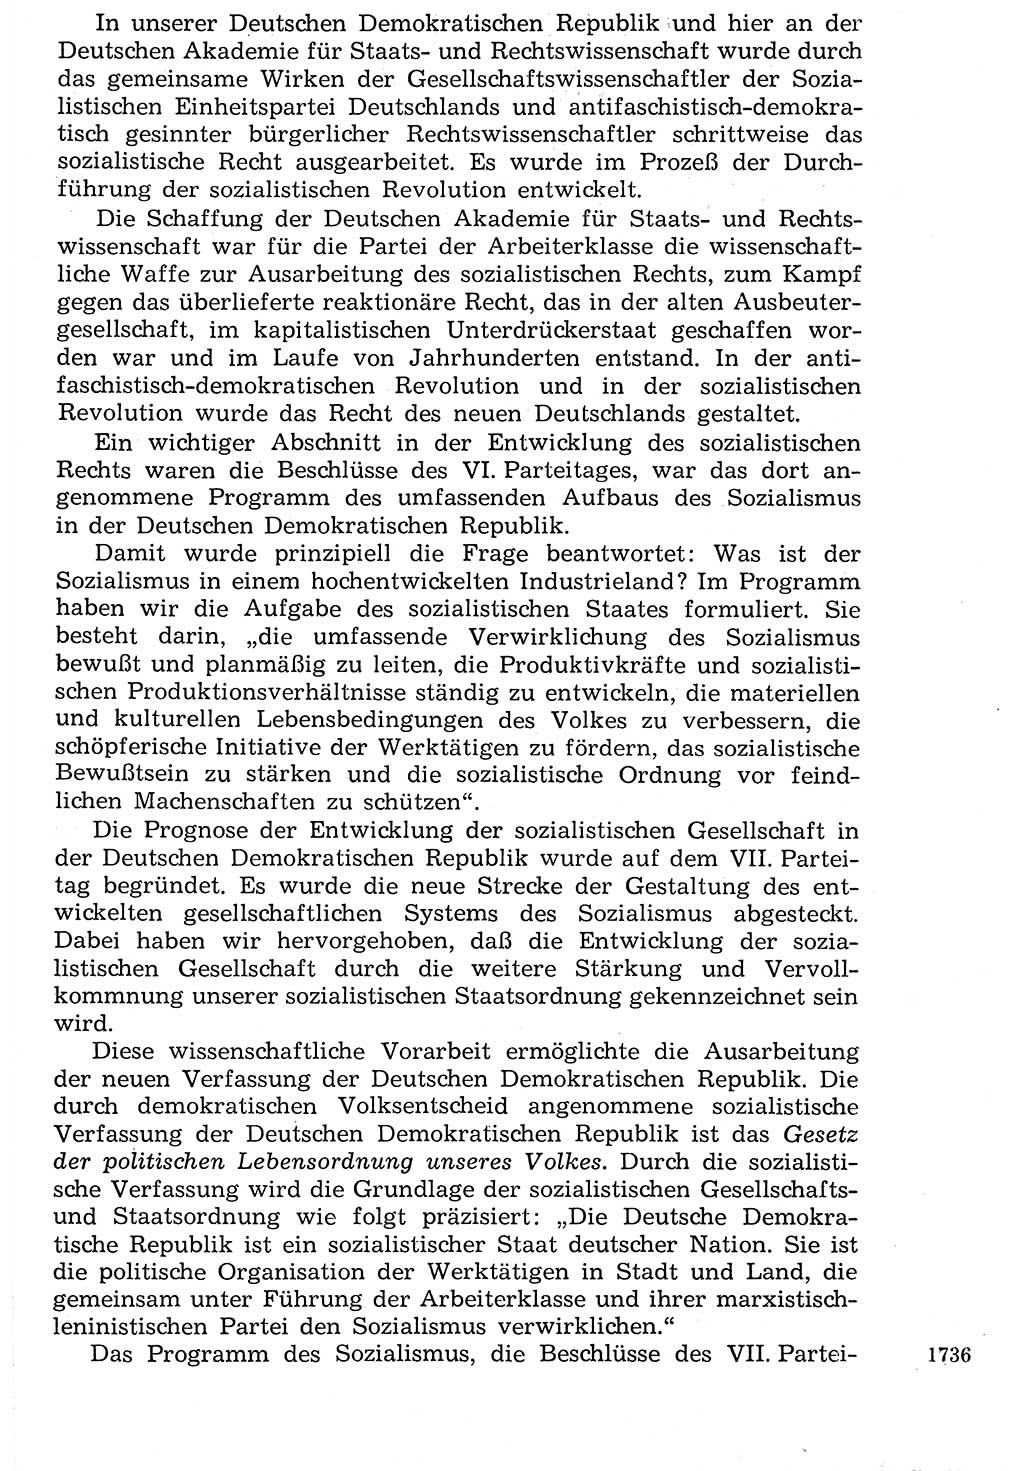 Staat und Recht (StuR), 17. Jahrgang [Deutsche Demokratische Republik (DDR)] 1968, Seite 1736 (StuR DDR 1968, S. 1736)